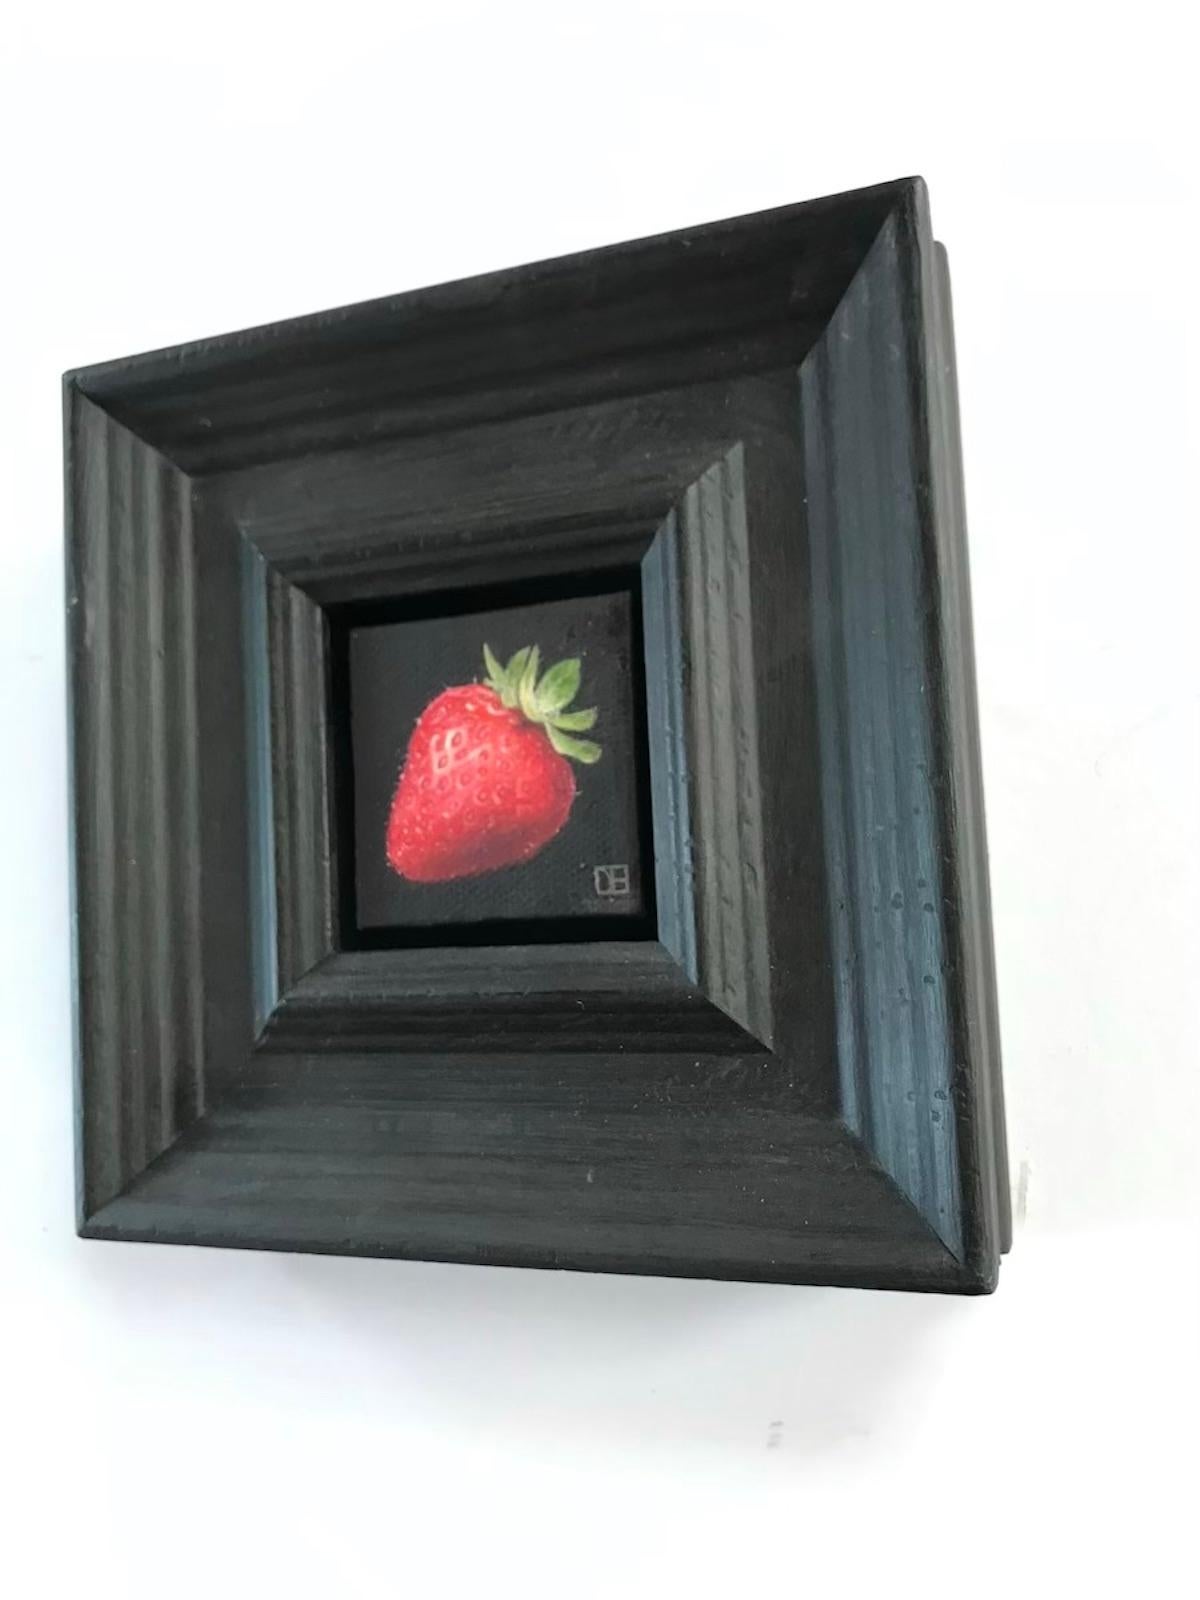 Peinture de nature morte contemporaine « Pocket Strawberry » de Dani Humberstone - Noir Landscape Painting par Dani Humberstone 